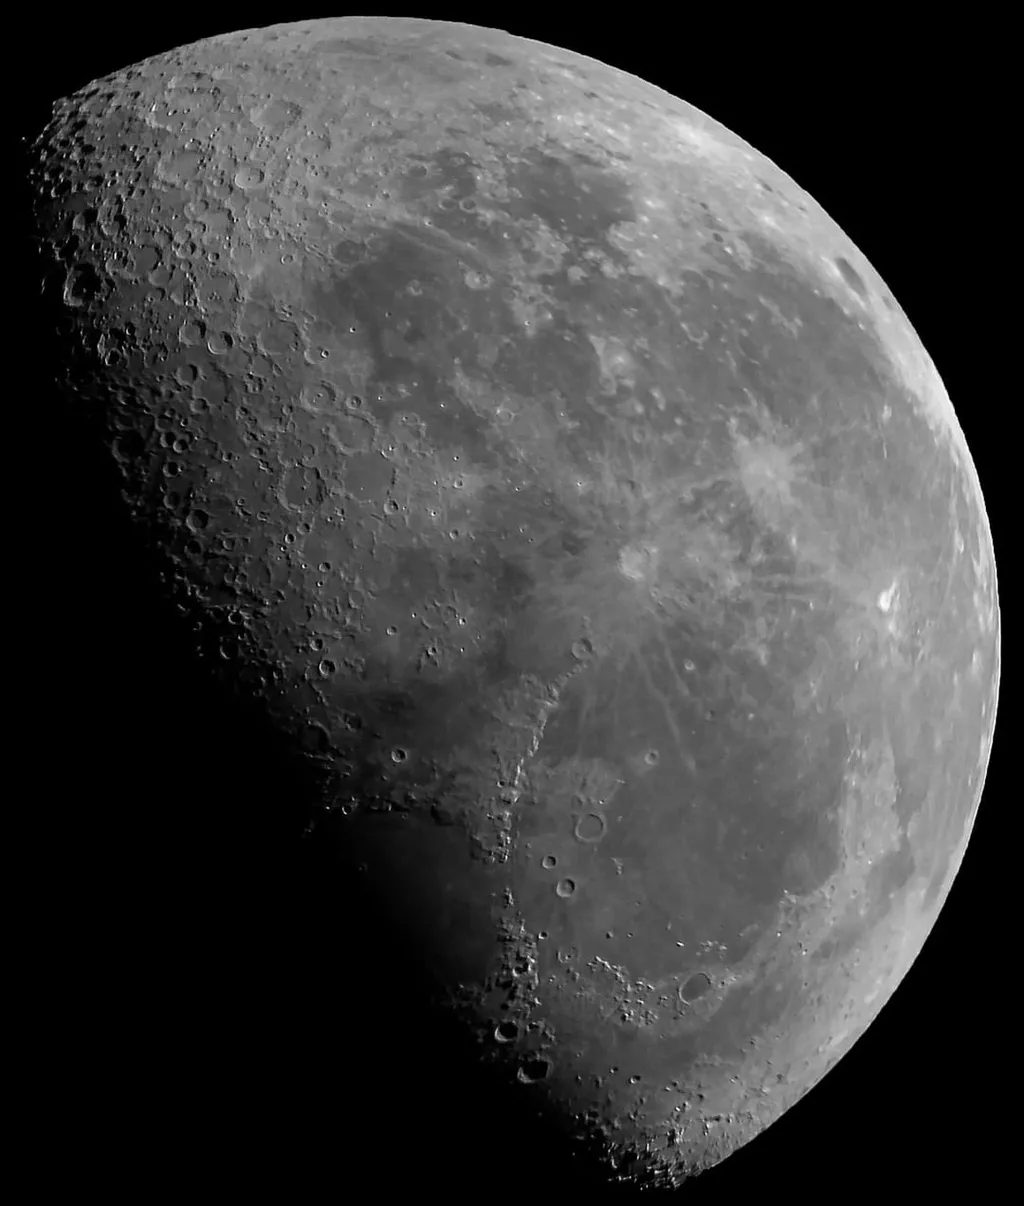 Lua fotografada com um smartphone Moto G5s e um telescópio 70 mm (Imagem: Guilherme Albuquerque Bellini)